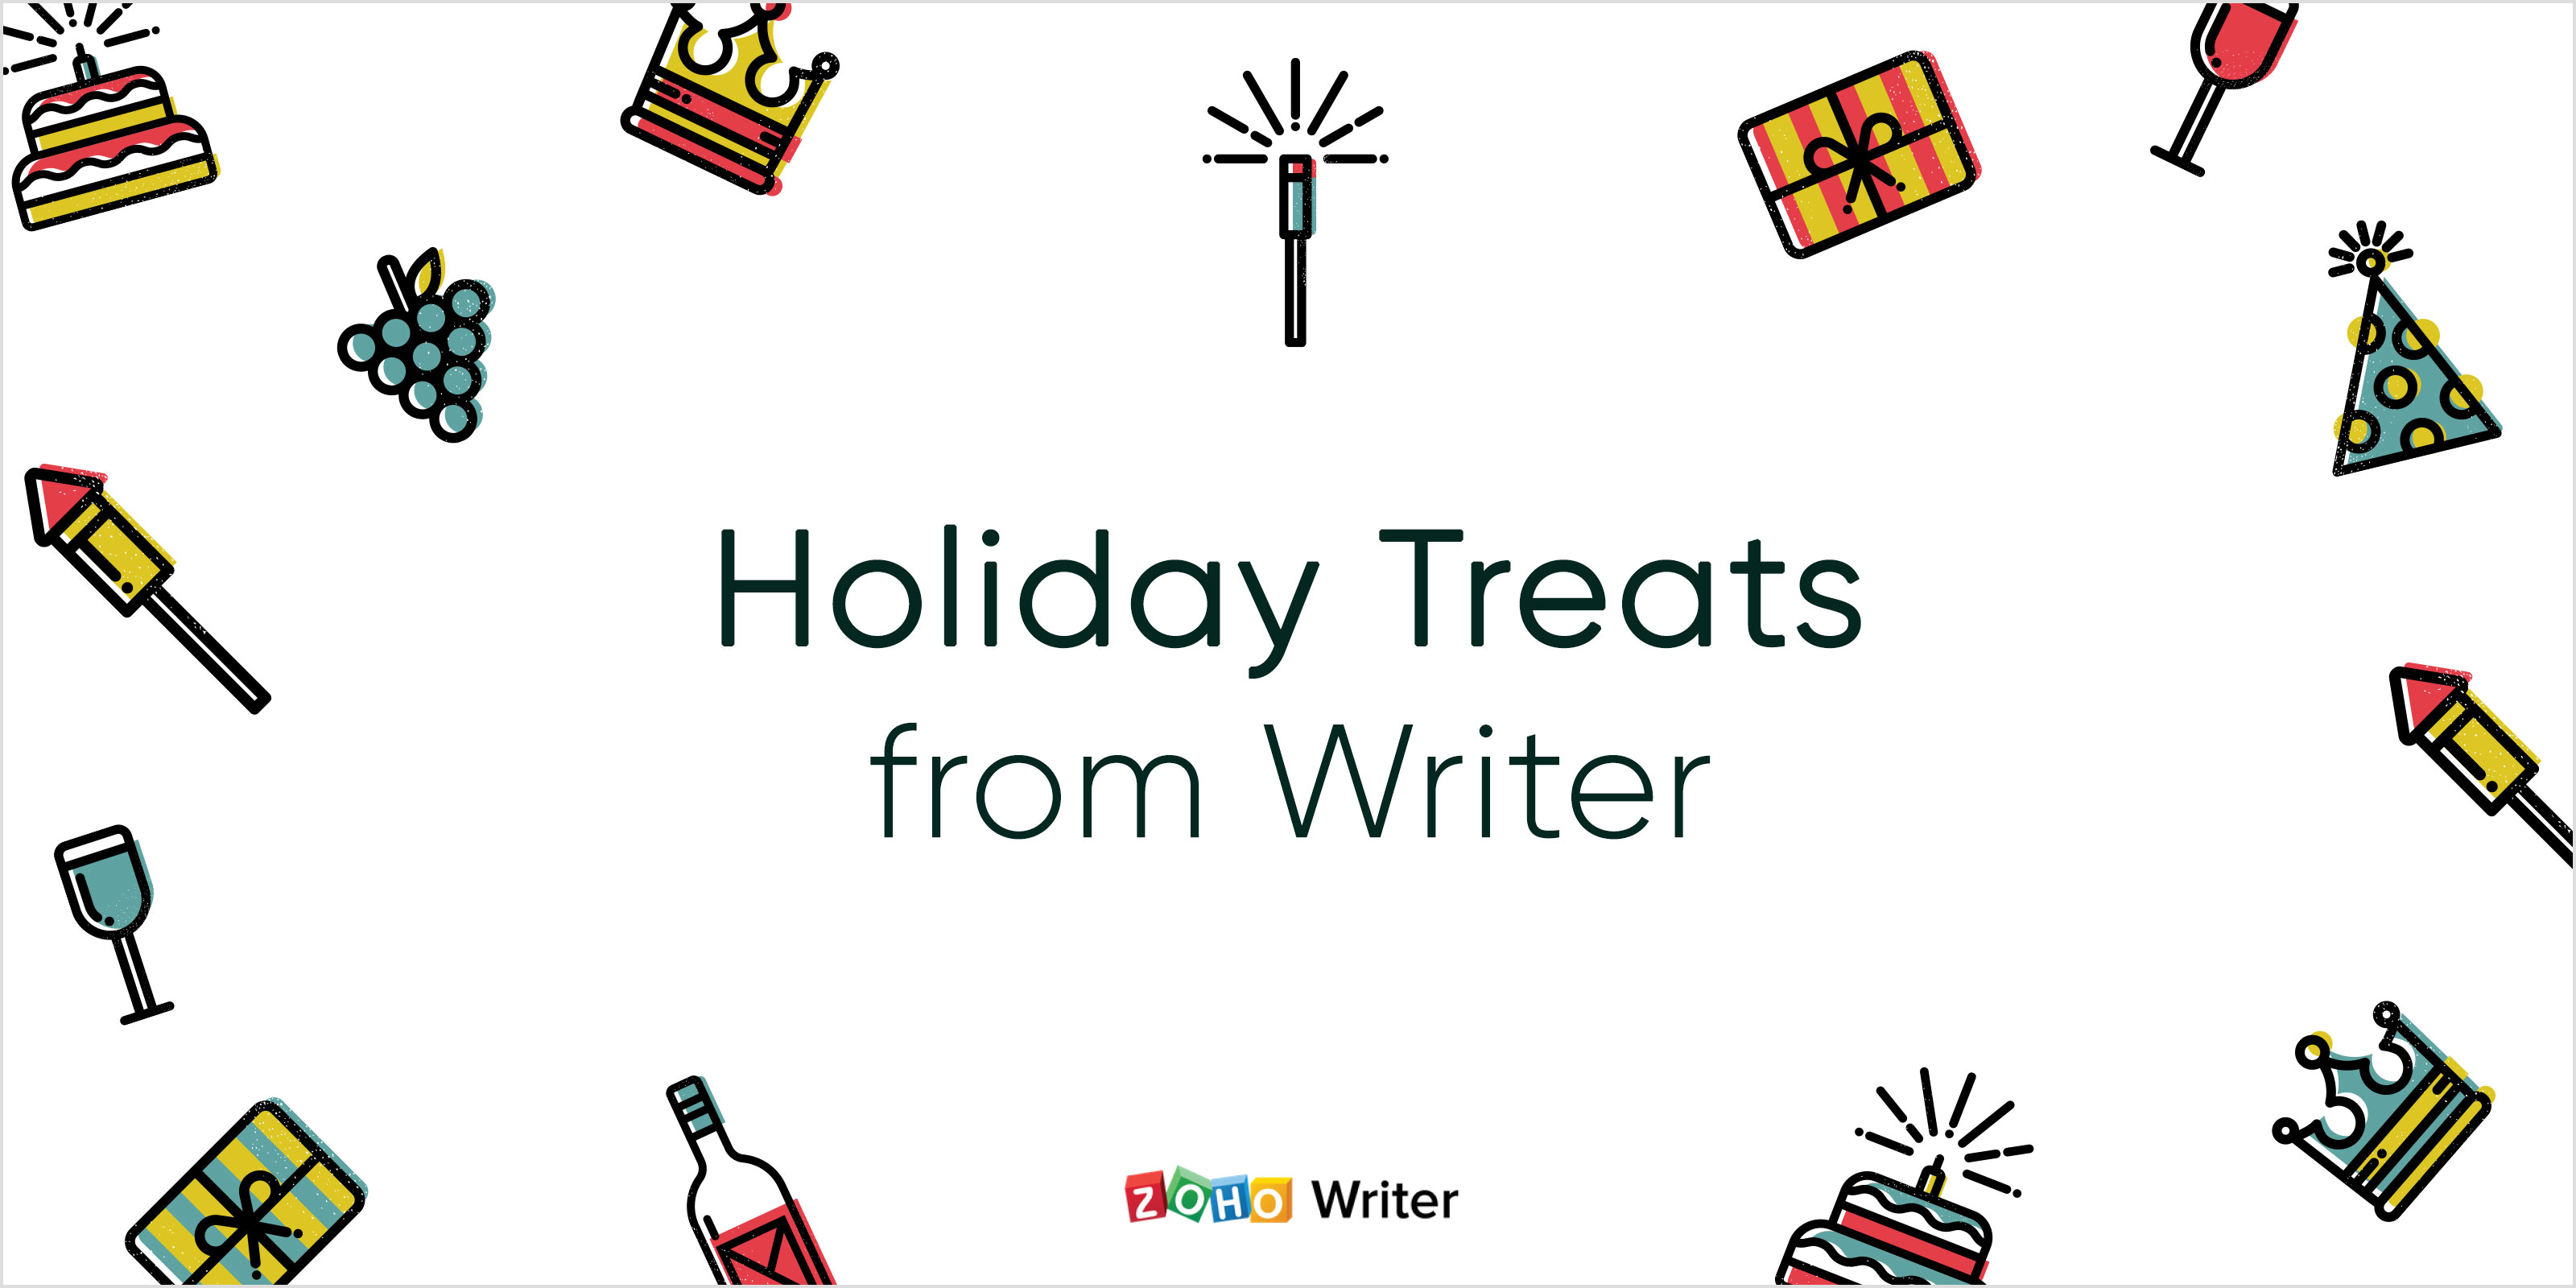 5 holiday treats from Writer